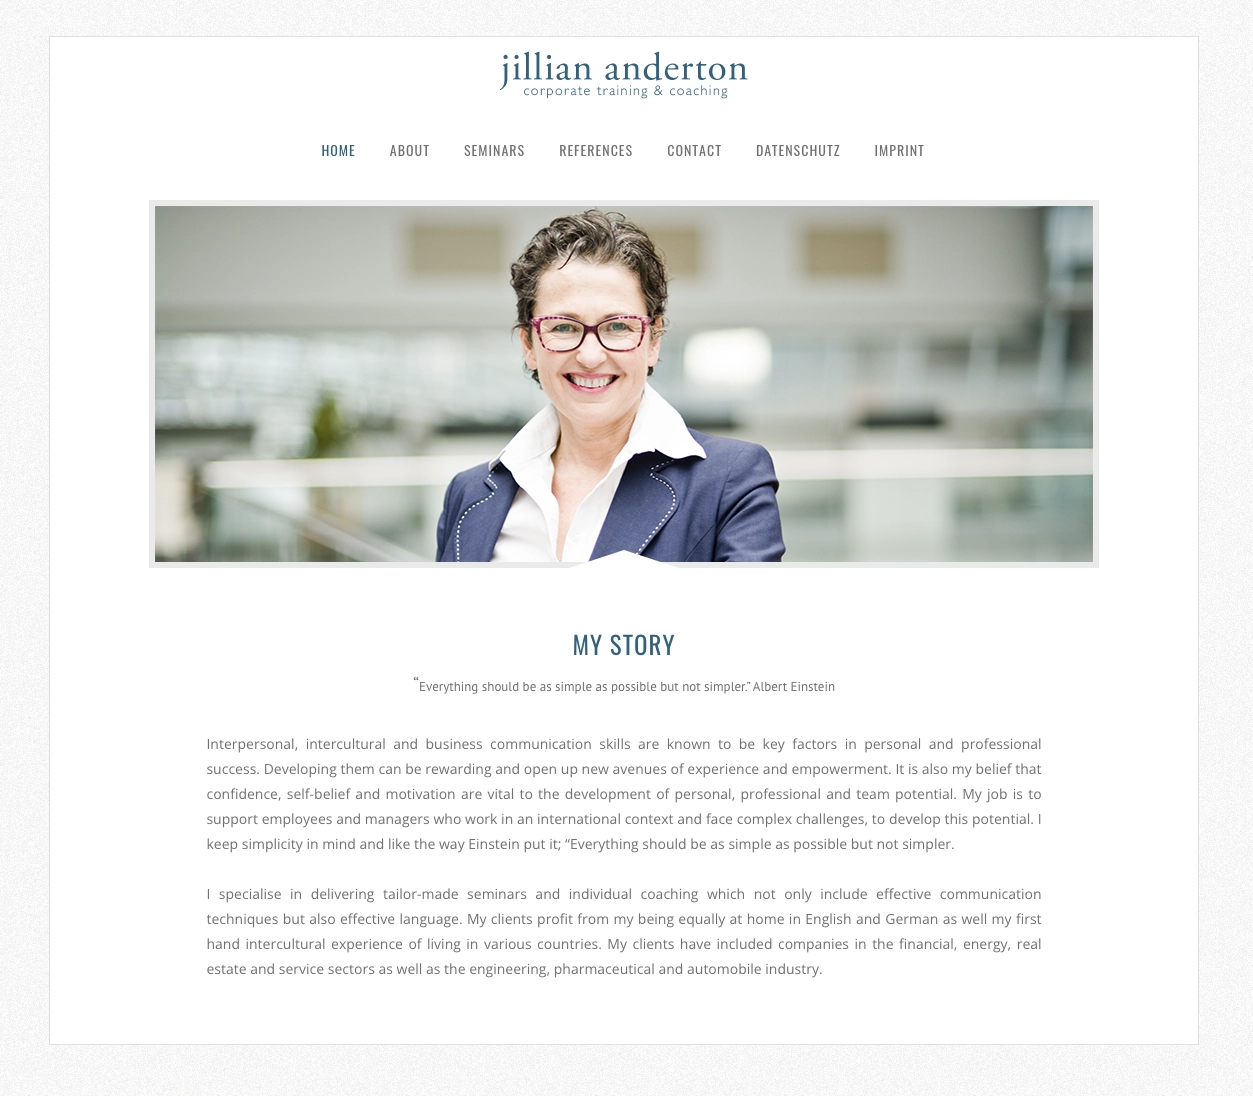 Startseite der Website, die für die Trainerin Jillian Anderton entworfen wurde